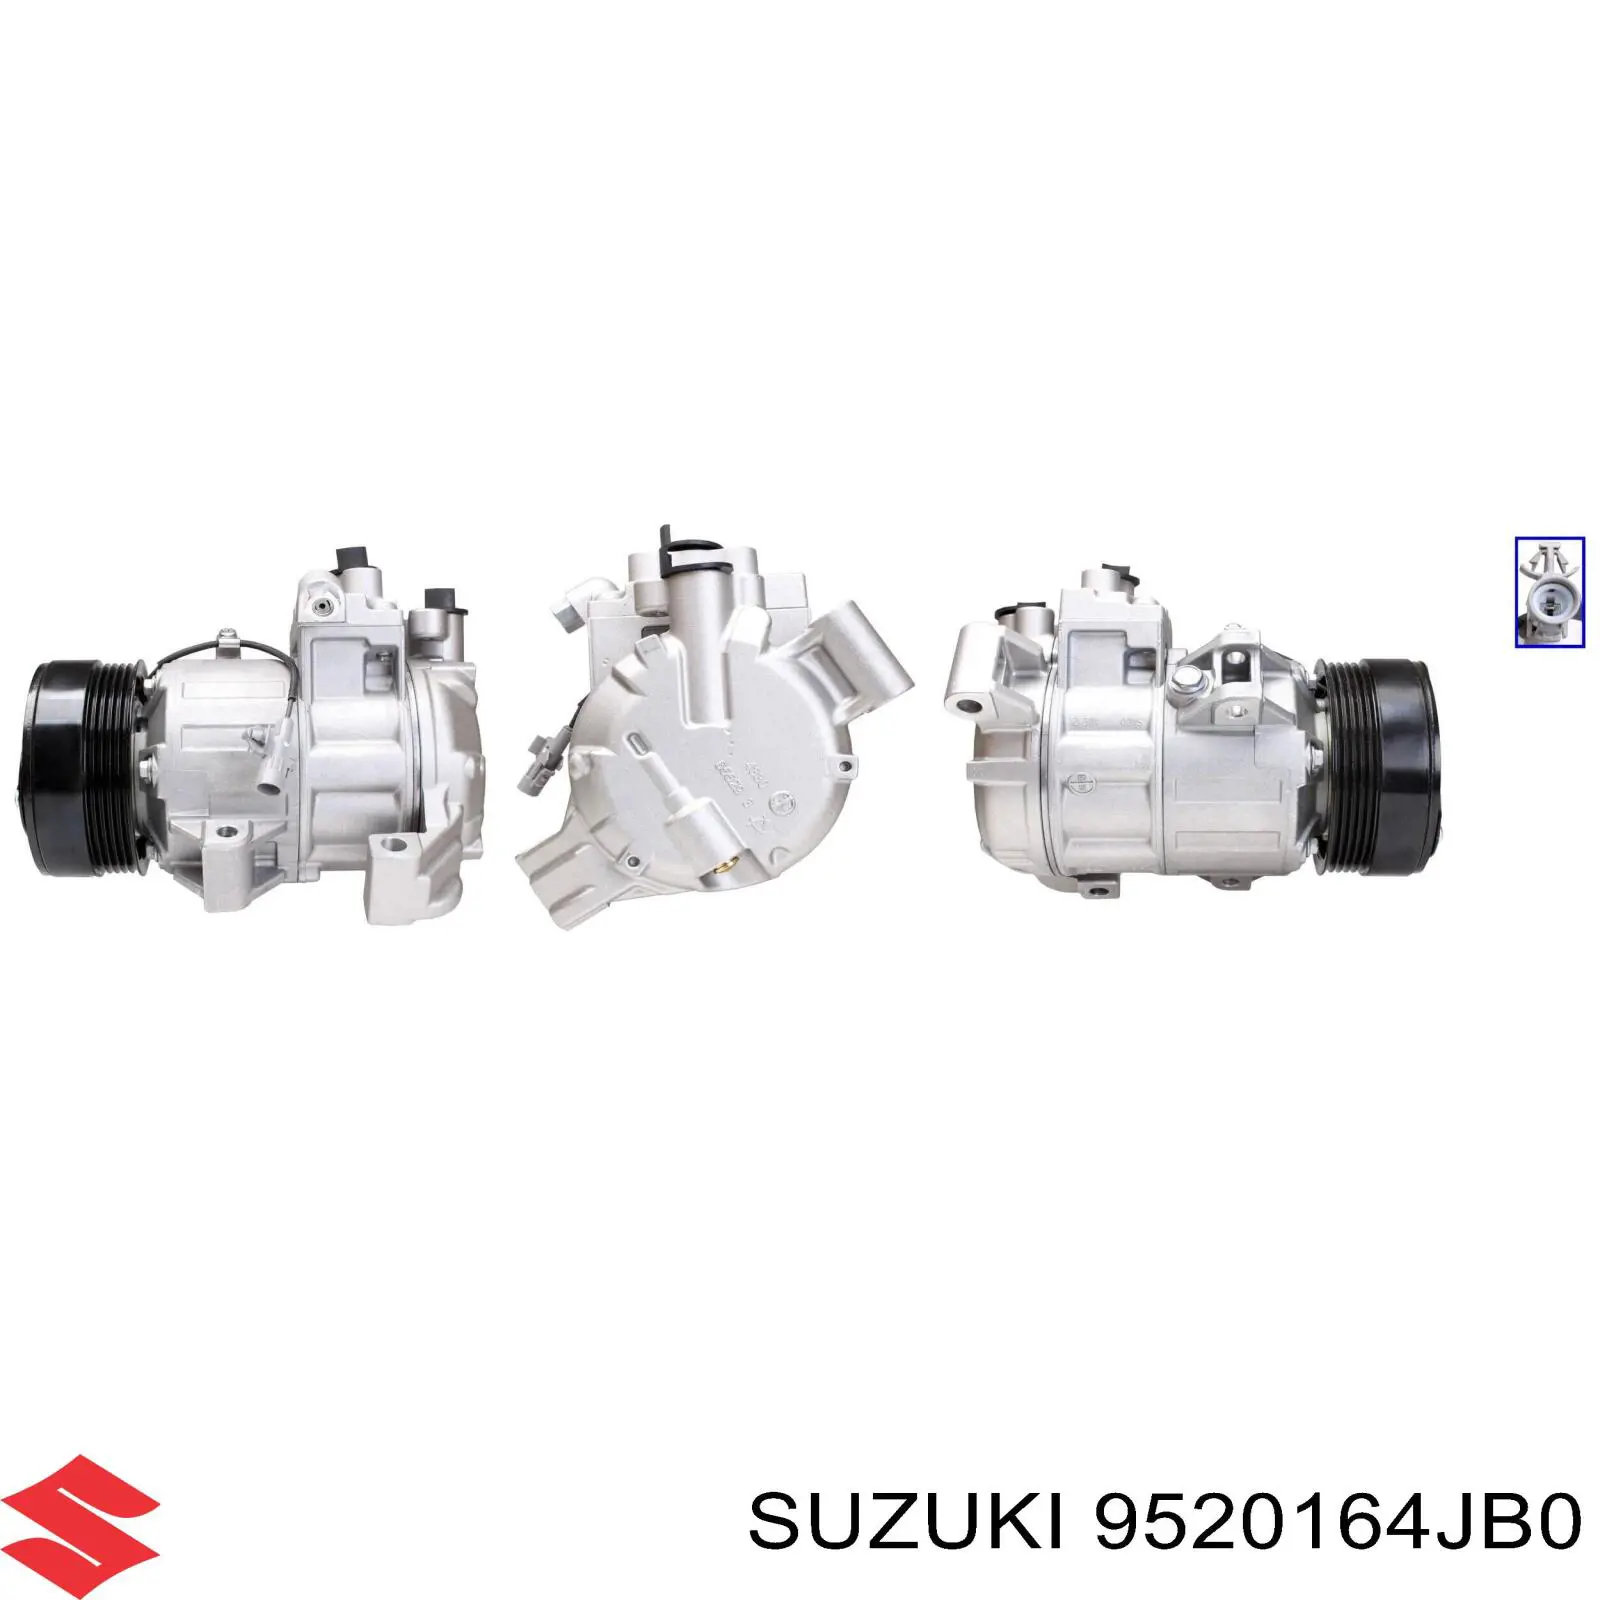 9520164JB0 Suzuki compresor de aire acondicionado